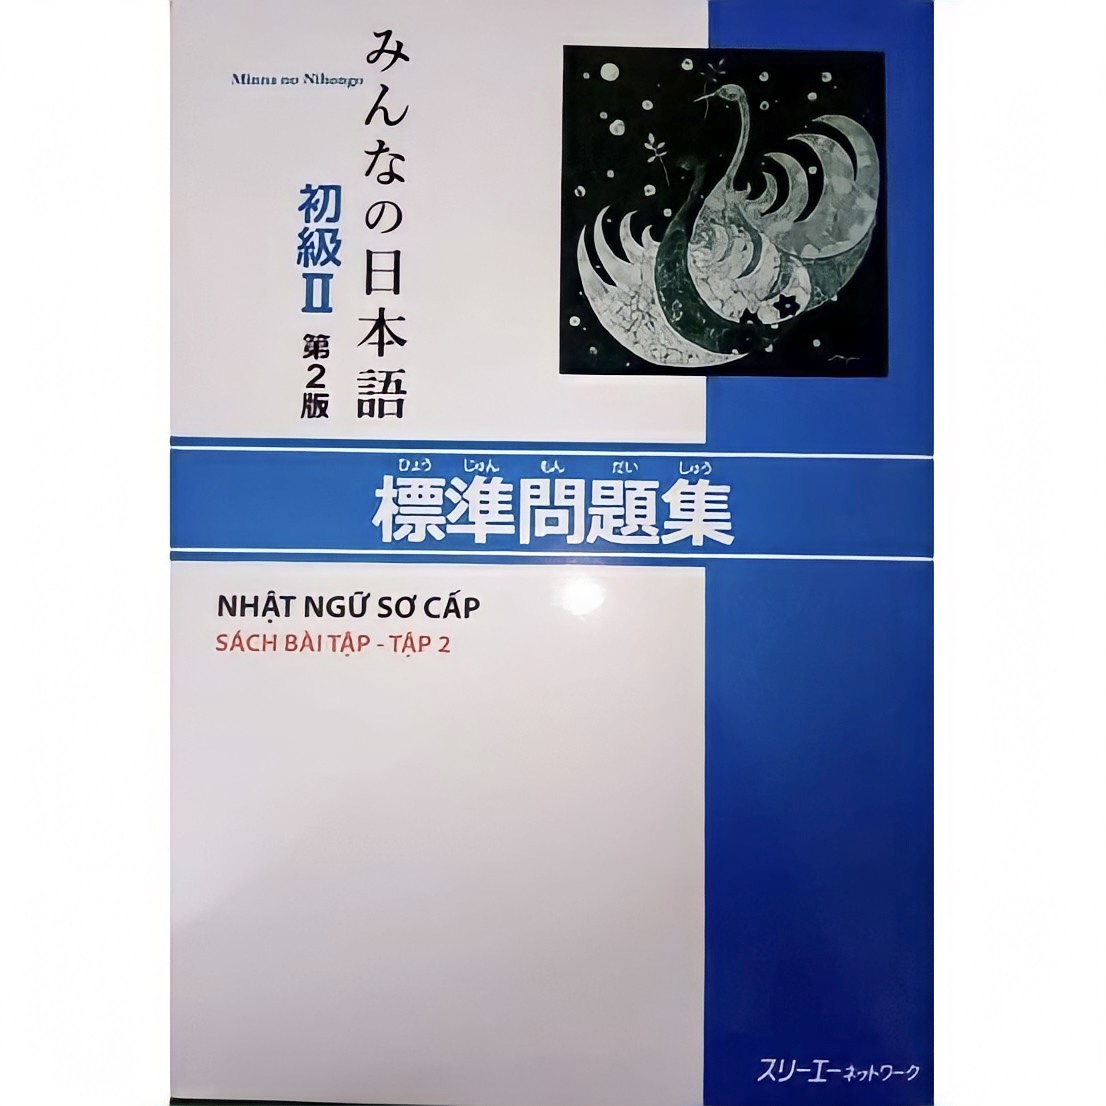 Minna No Nihongo Sơ cấp 2 Bản mới: Hyojun mondaishu, Sách bài tập tập 2, bản mới, giá rẻ